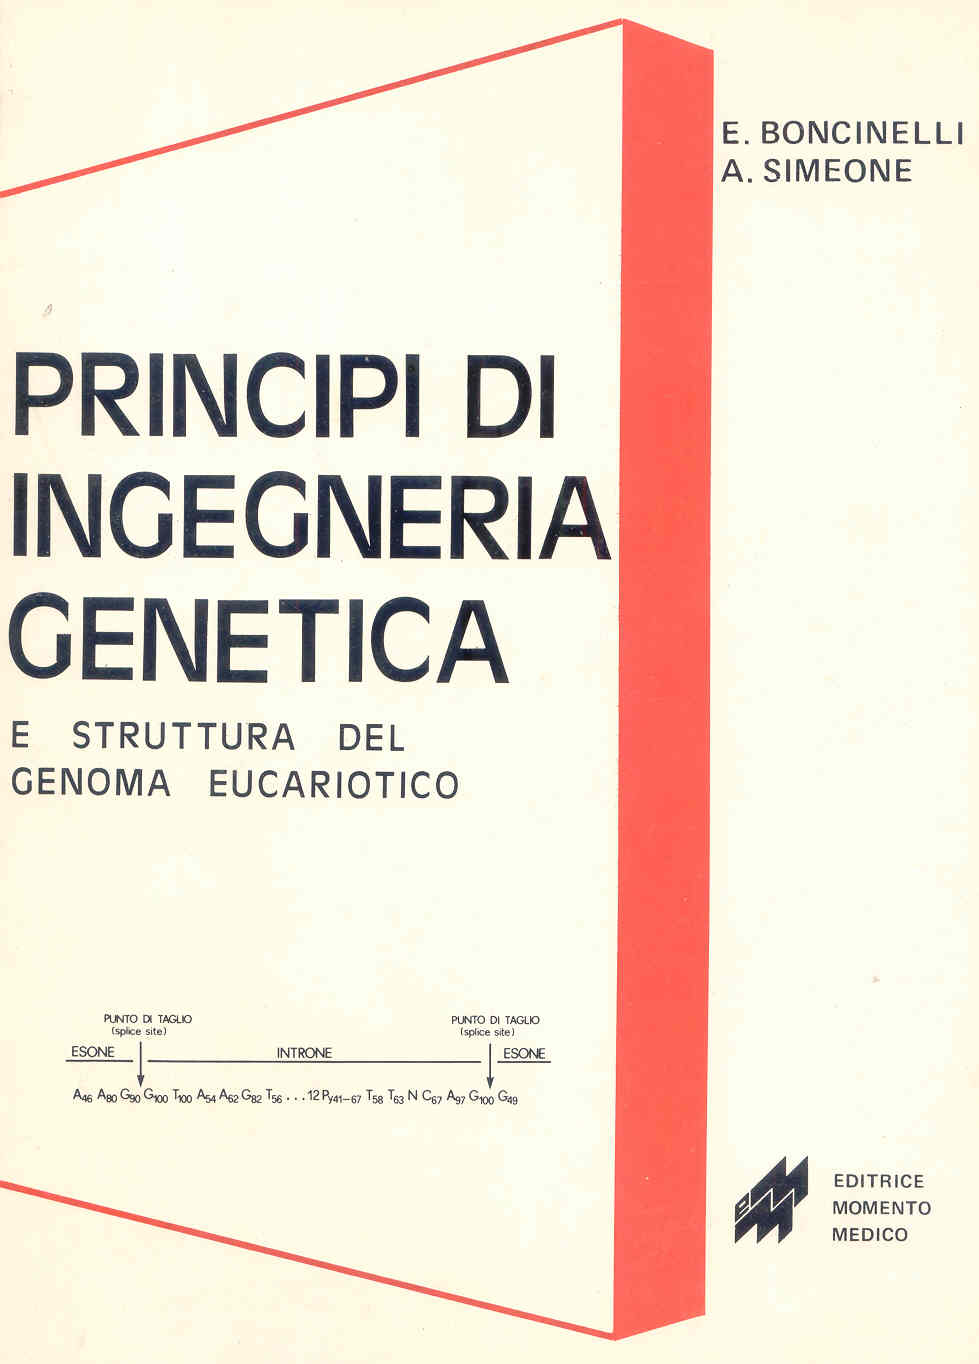 Principi di ingegneria genetica e biologia molecolare del genoma eucariotico - 1984